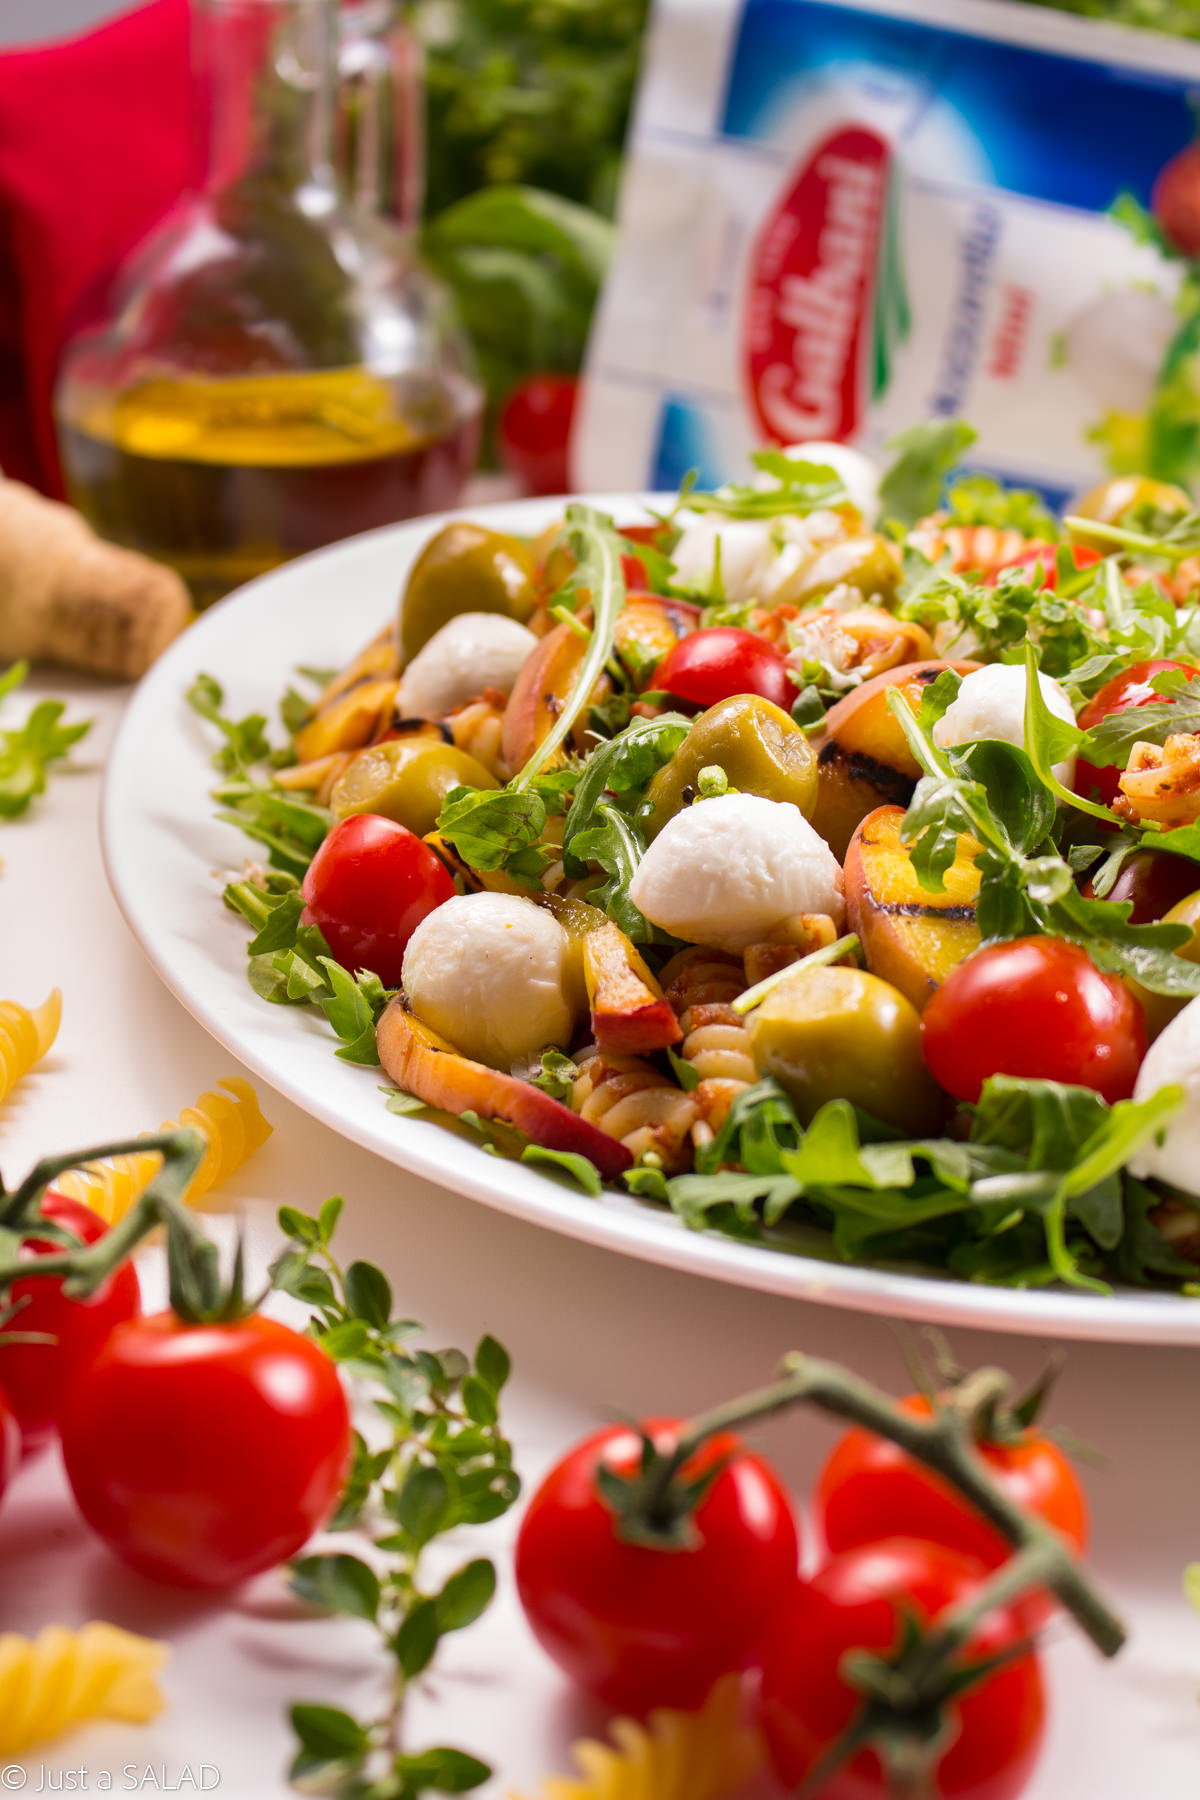 Włoska strona lata. Sałatka z makaronem w pomidorowym pesto, rukolą, pomidorkami, brzoskwiniami, oliwkami i mozzarellą.